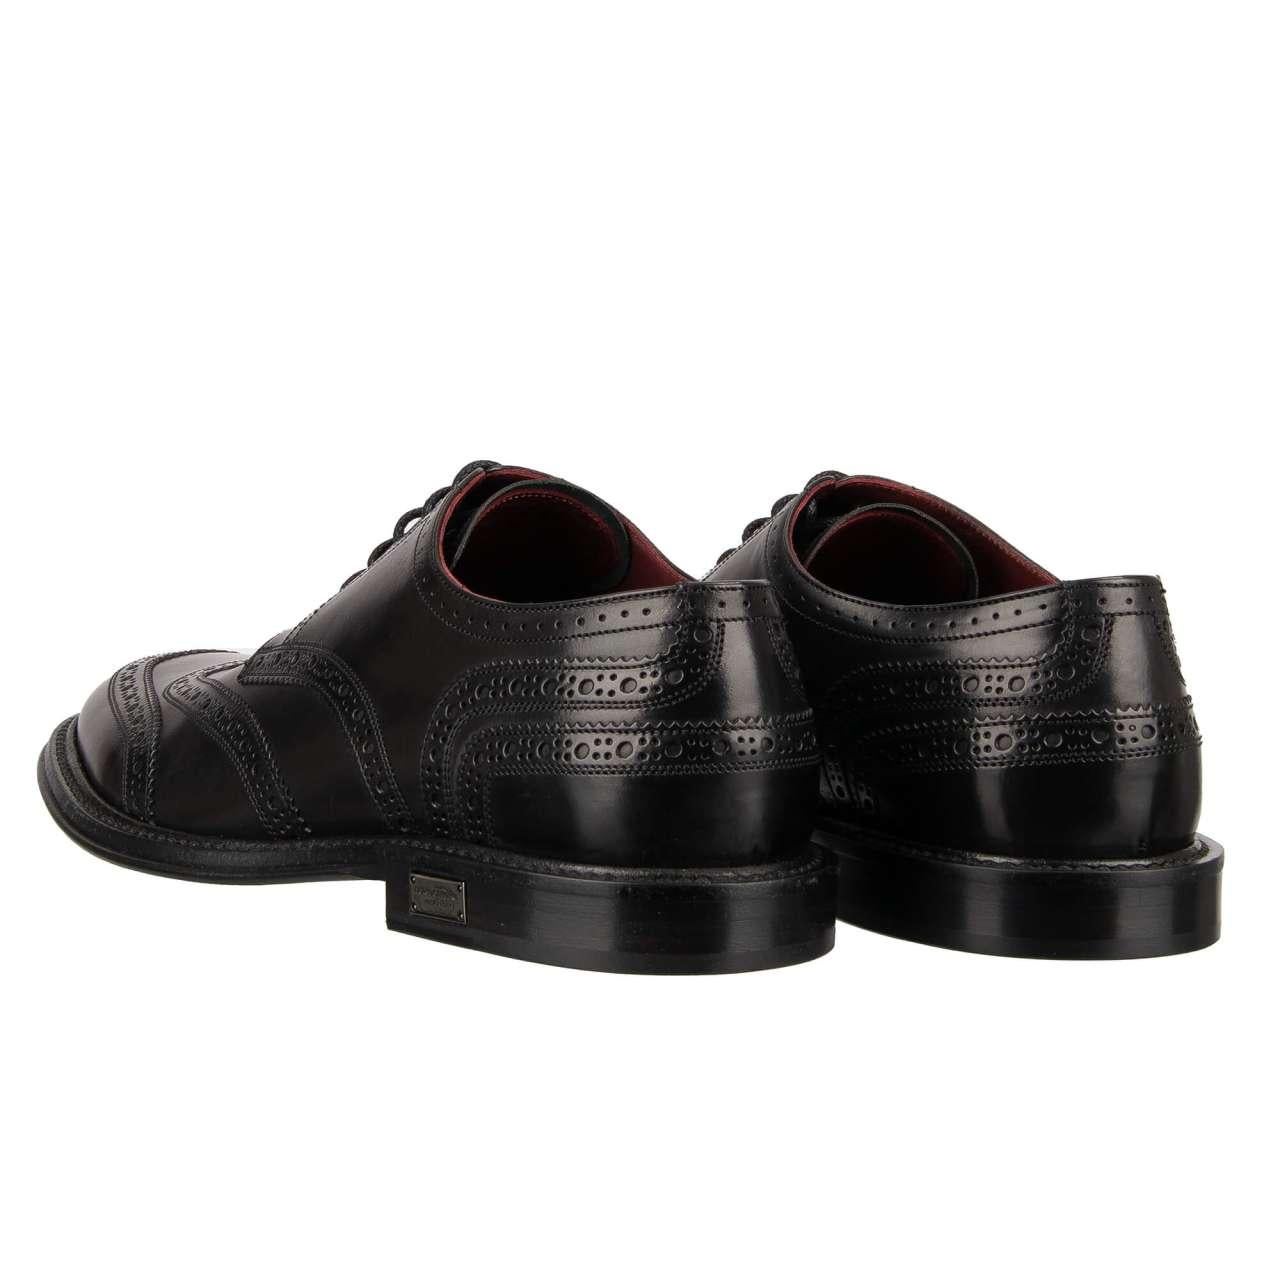 Dolce & Gabbana - DG Logo Formal Calf Leather Derby Shoes MARSALA Black EUR 41.5 For Sale 1